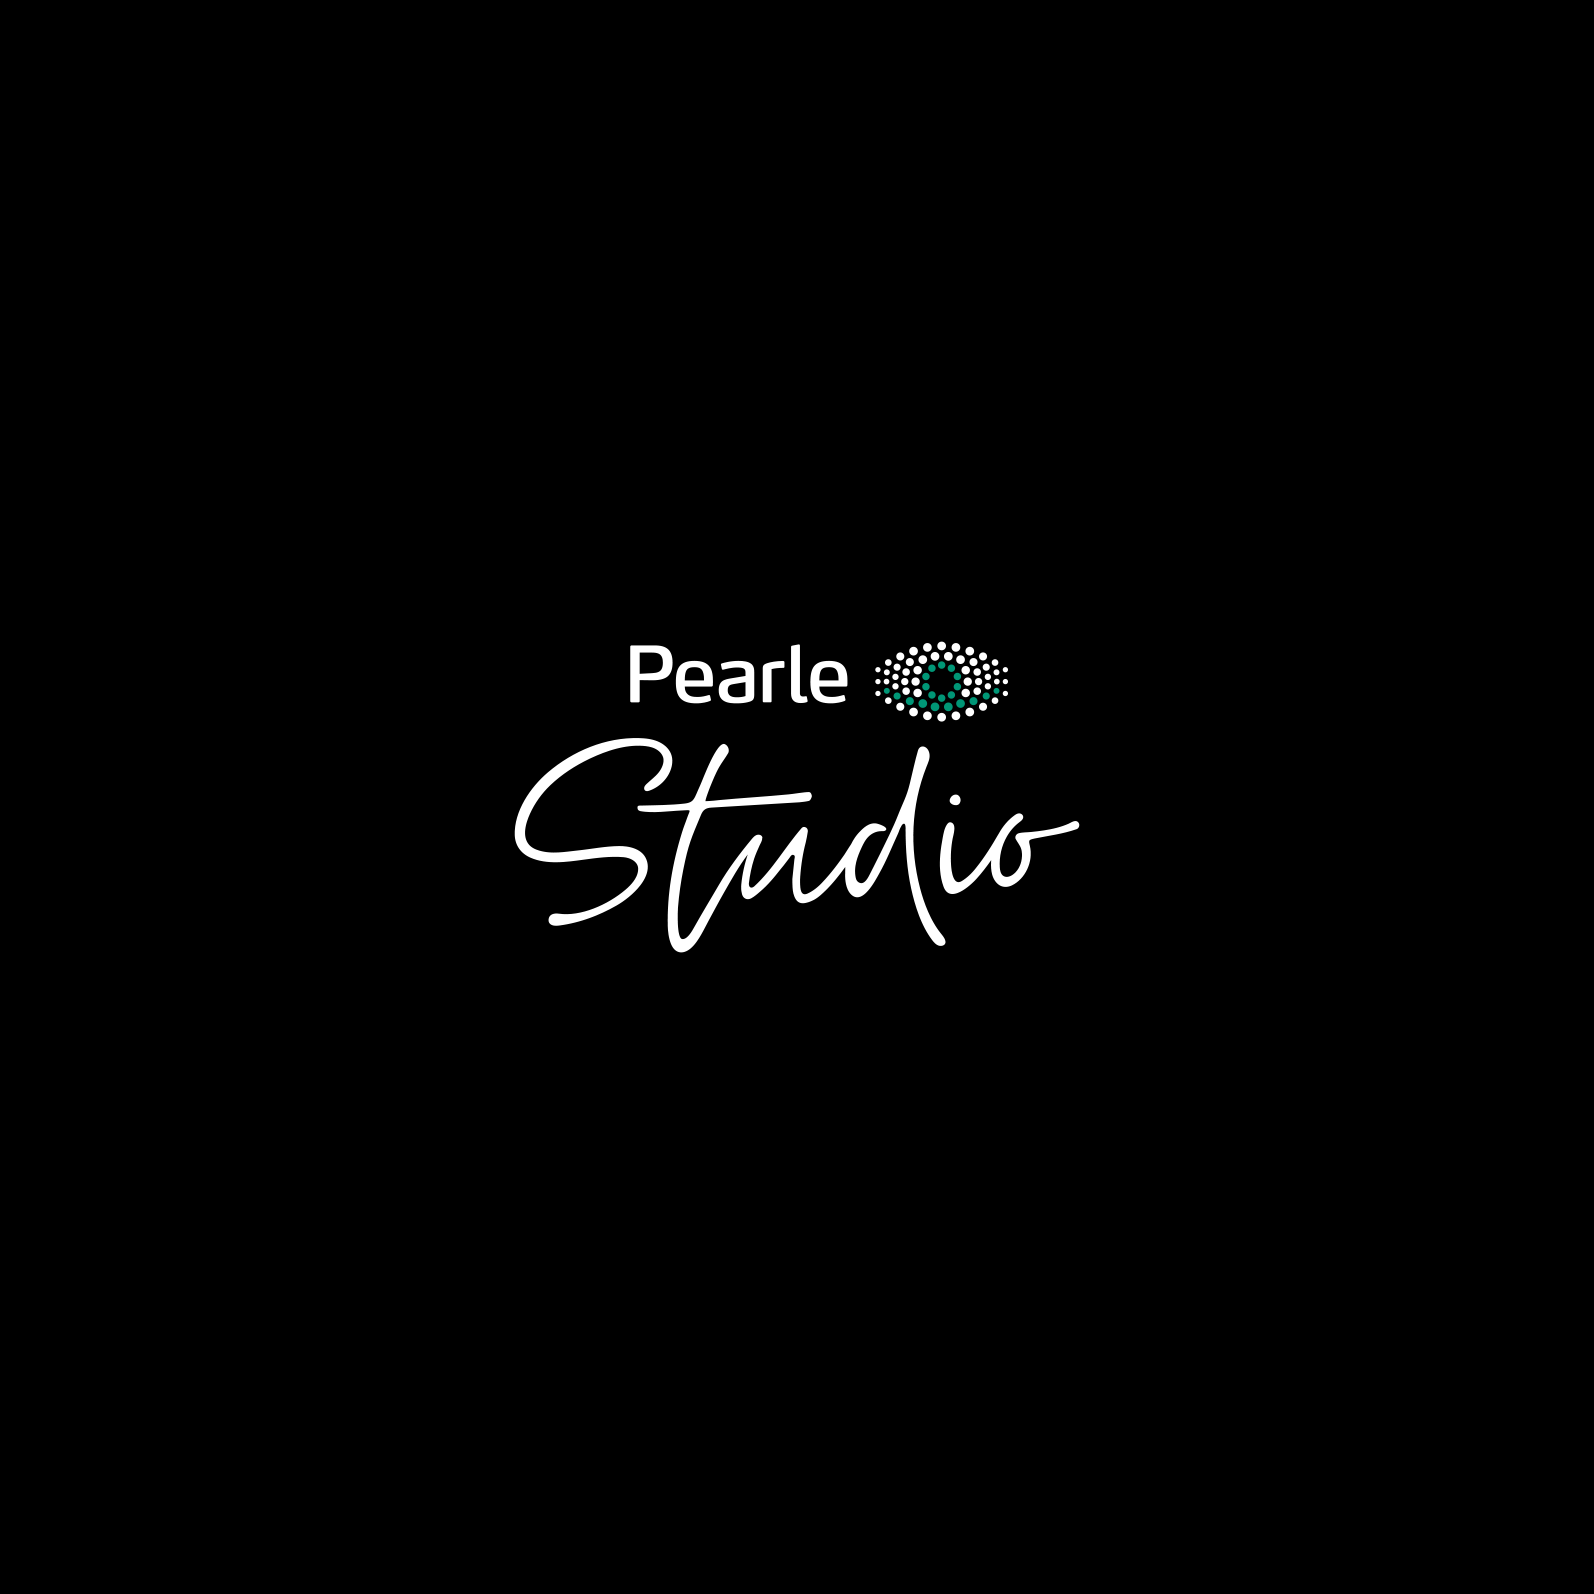 Pearle Studio Stadskanaal